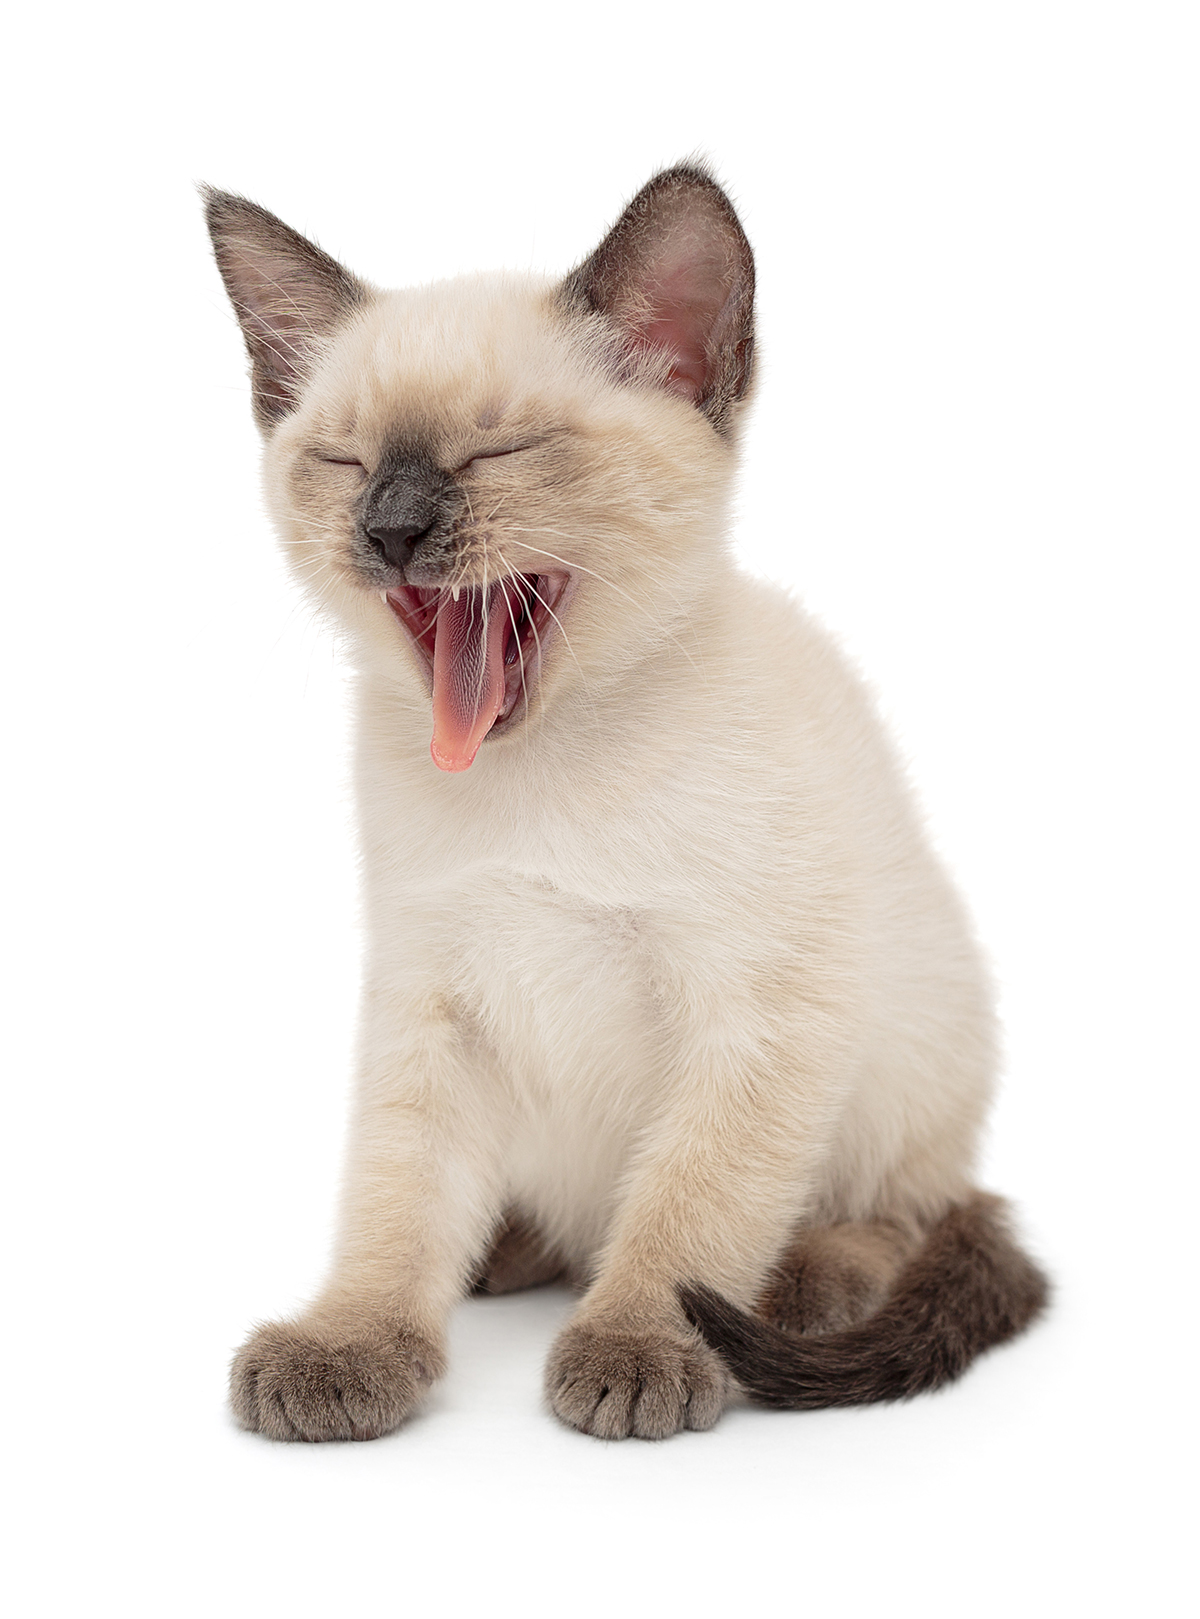 Louisiana SPCA 404 Page Cat